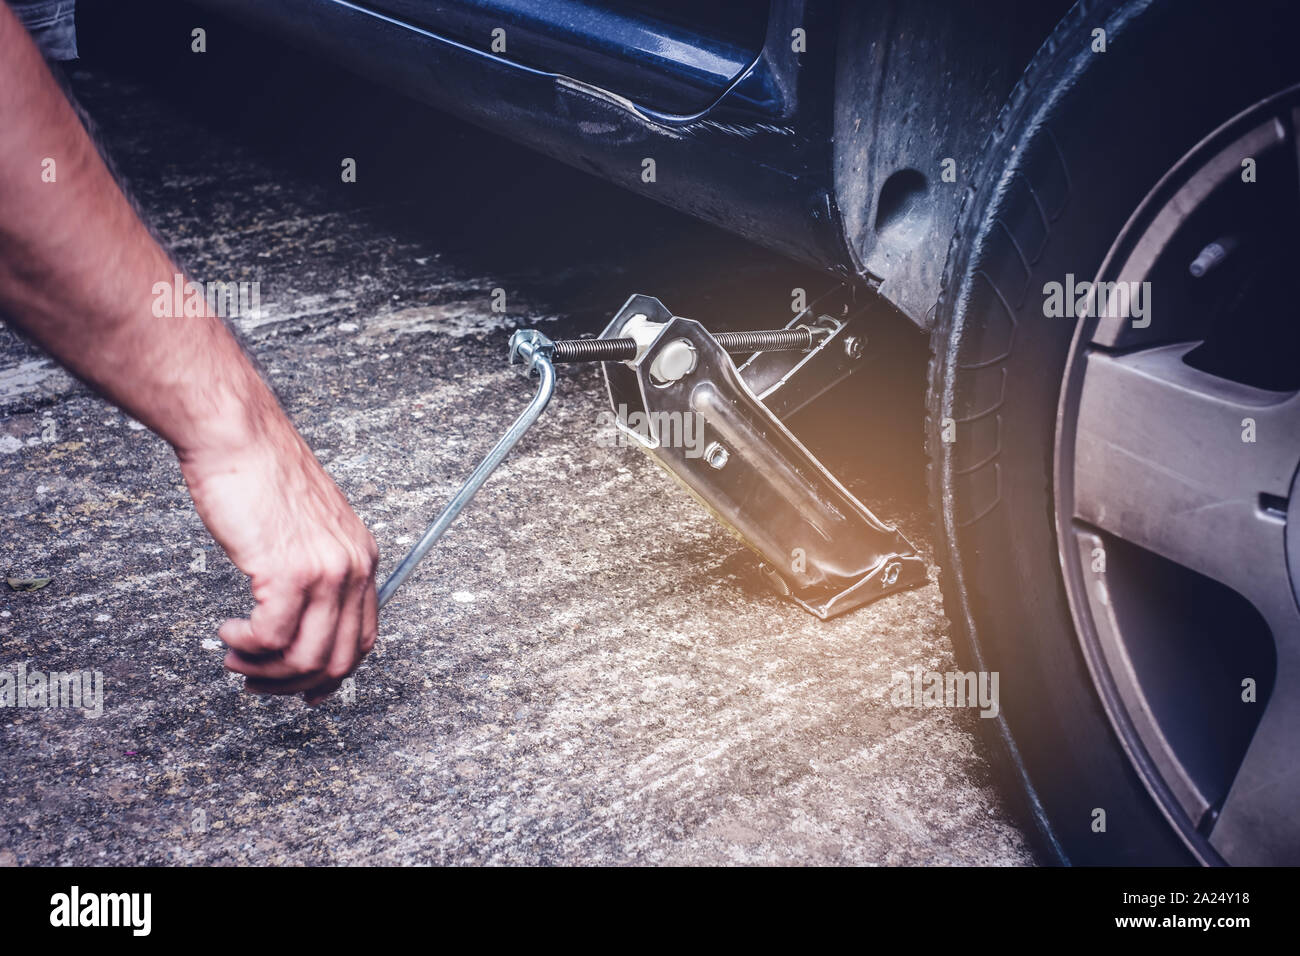 Mann anheben Auto mit Jack Schraube für Reifenwechsel der Reifenpanne Rad - Reifenwechsel oncept Stockfoto